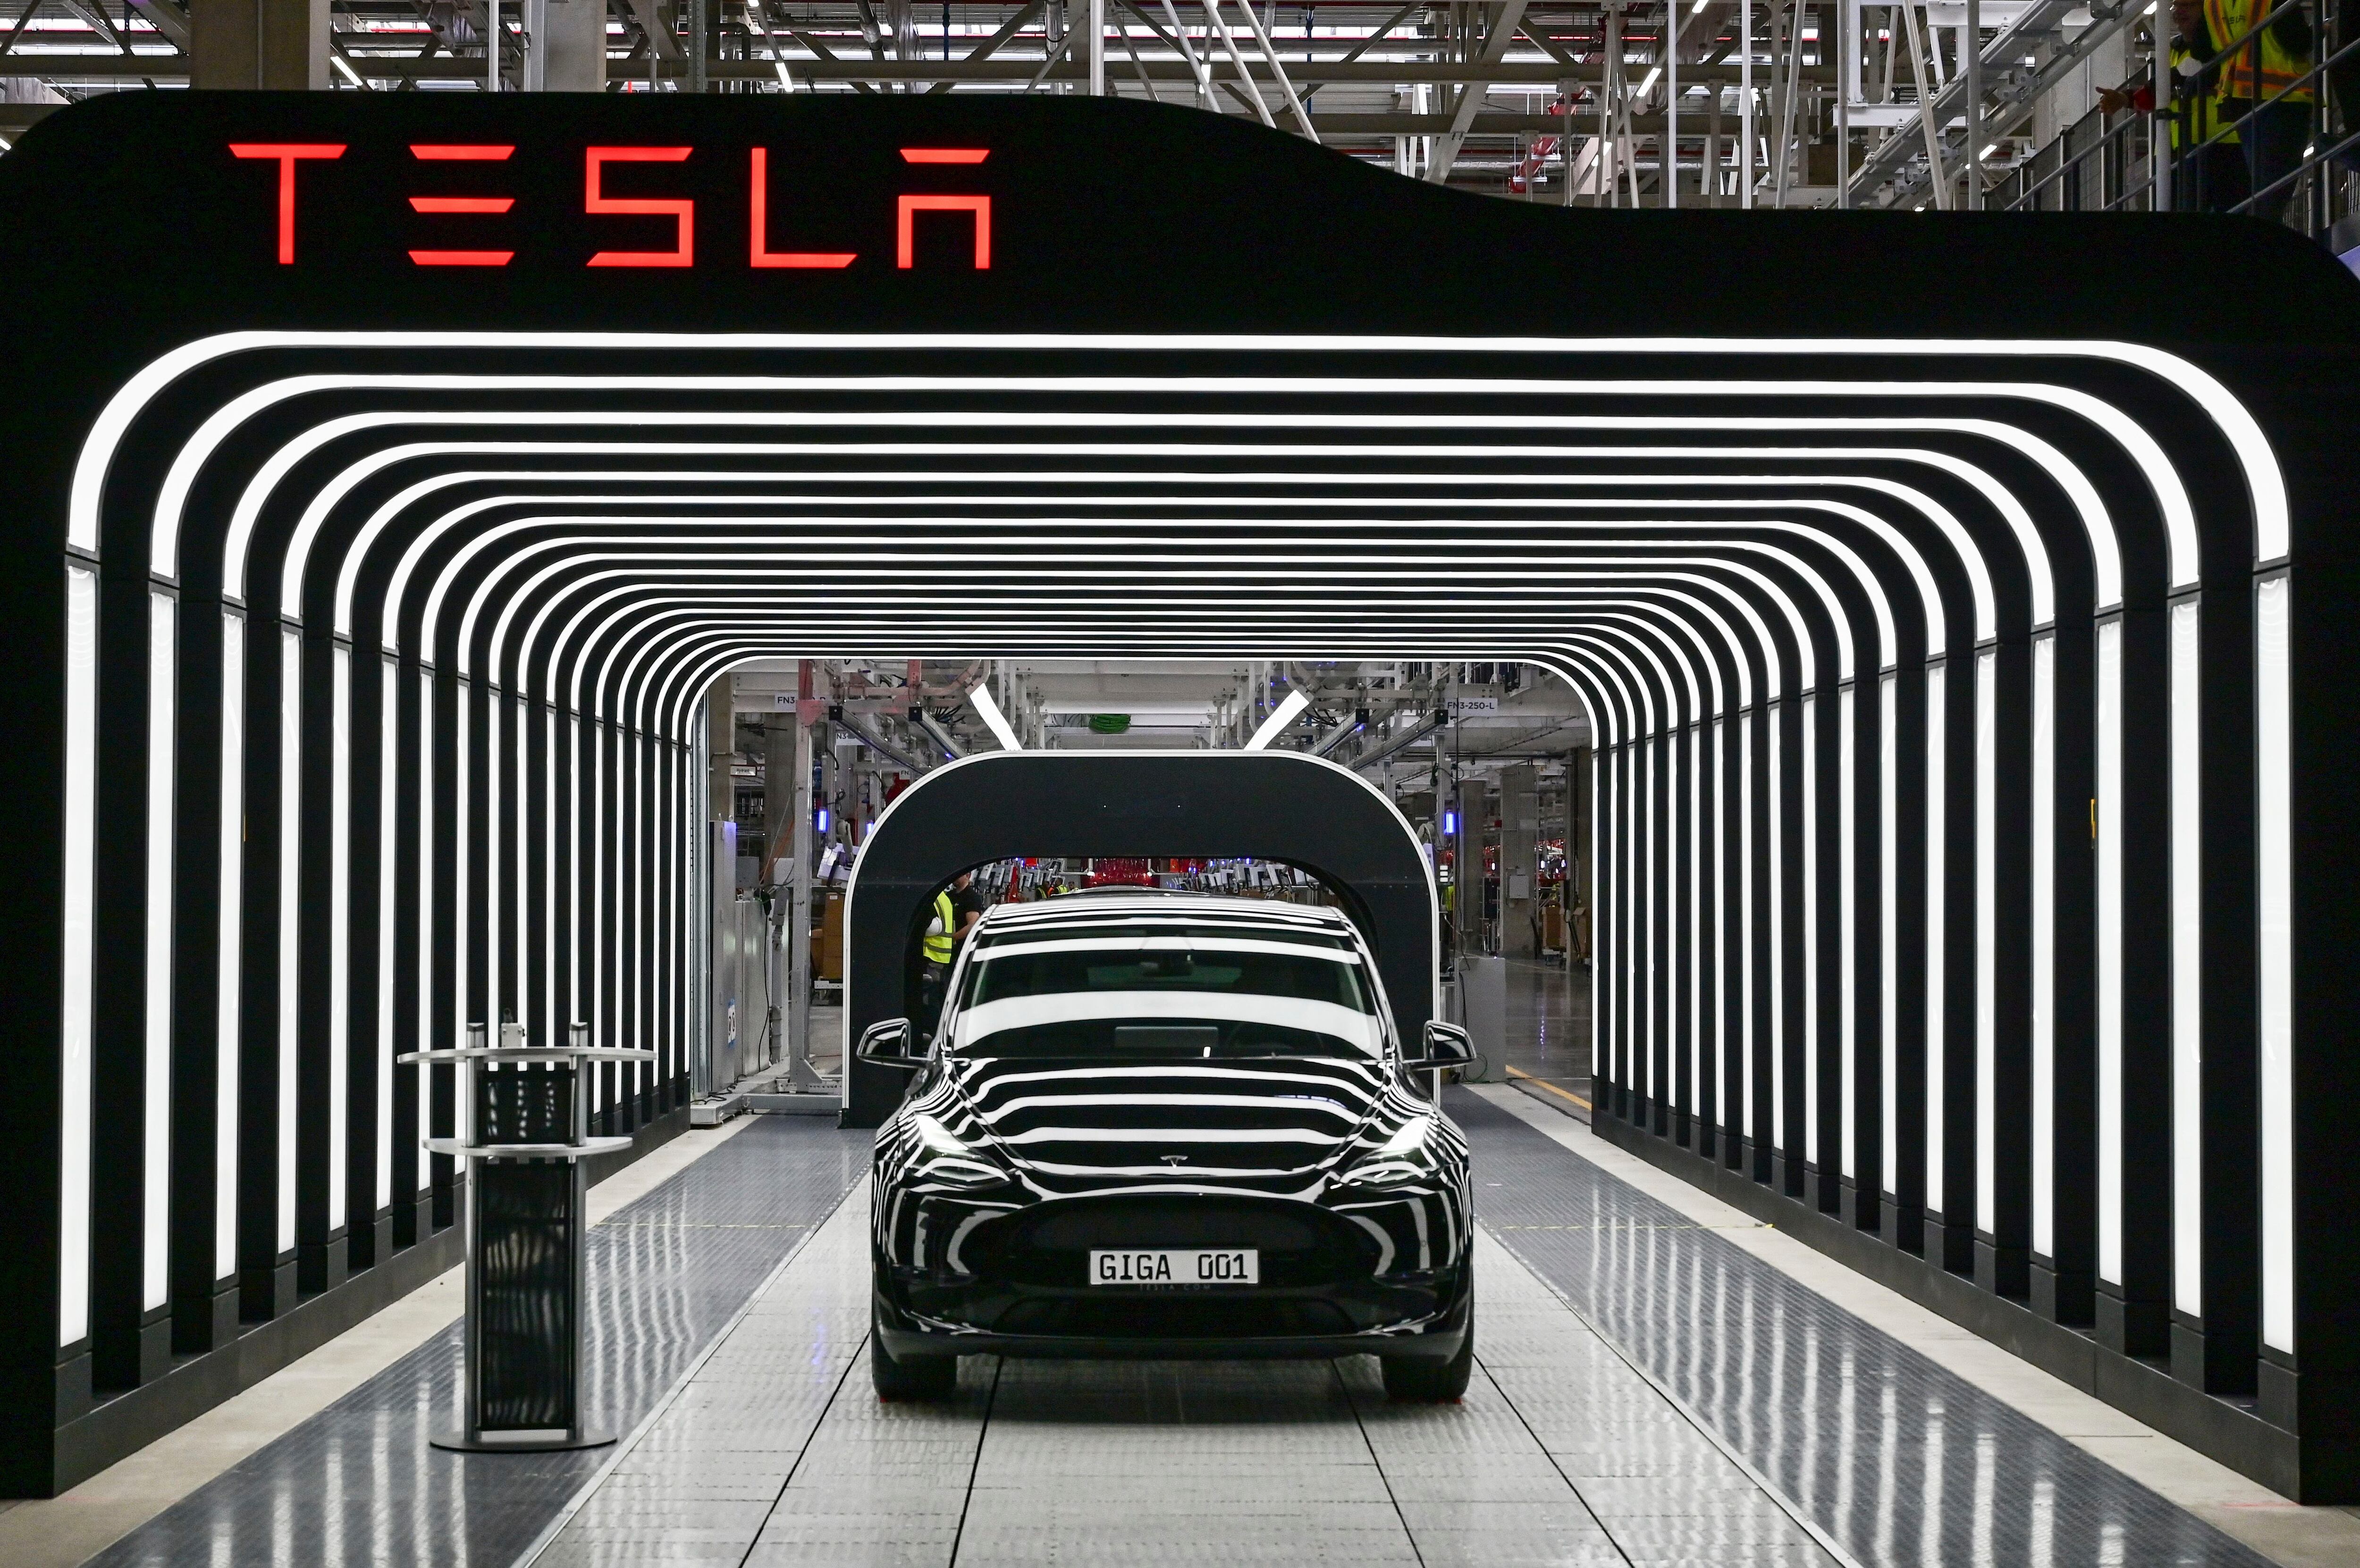 Instalar una fábrica de Tesla en Argentina podría ser un excelente negocio si Musk invierte en una fábrica de baterías de litio. (Patrick Pleul/Pool via AP, archivo)